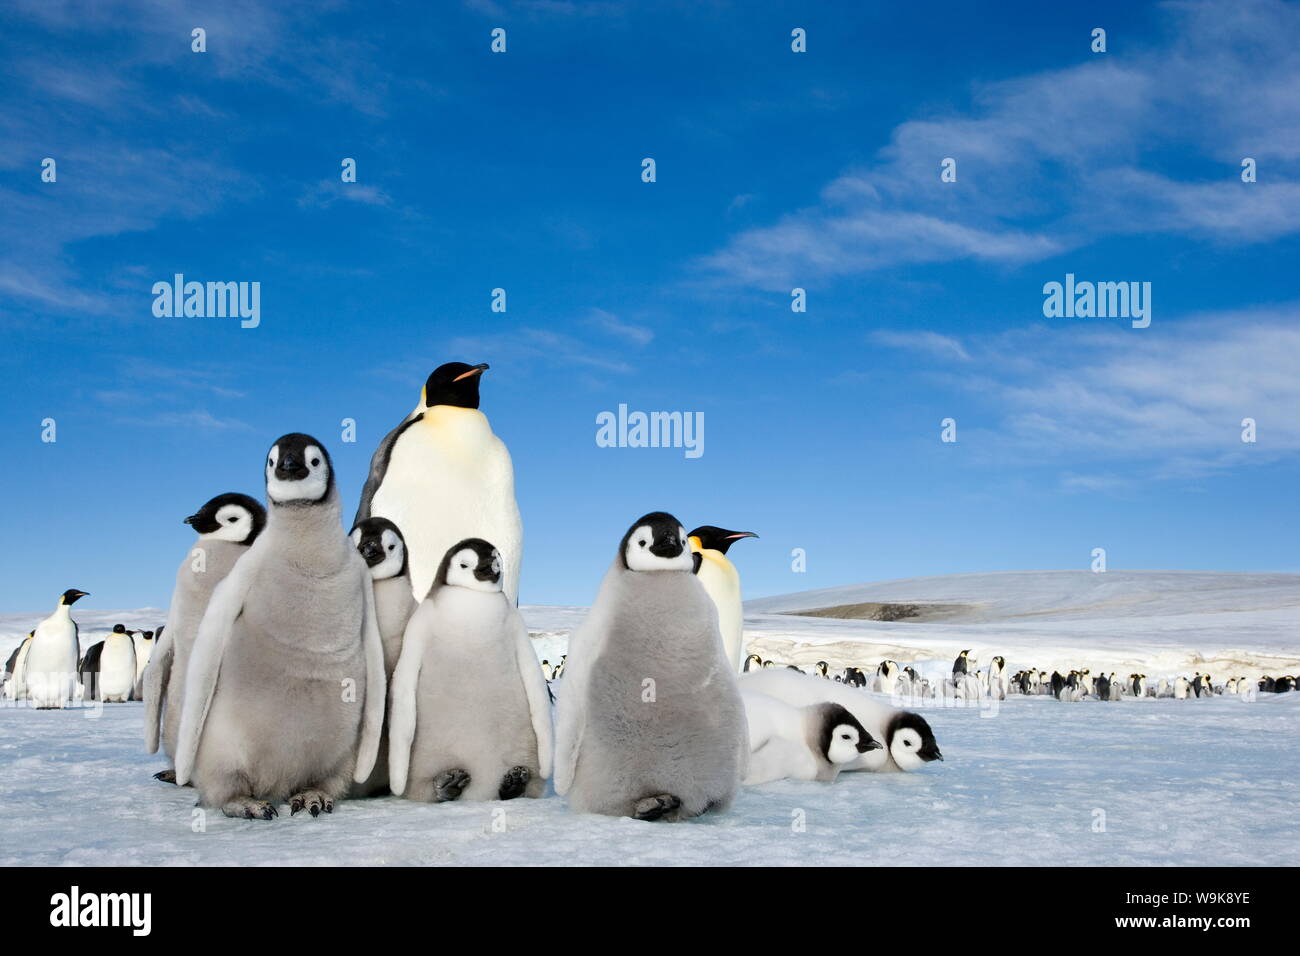 Emperor penguin (Aptenodytes forsteri) and chicks, Snow Hill Island, Weddell Sea, Antarctica, Polar Regions Stock Photo